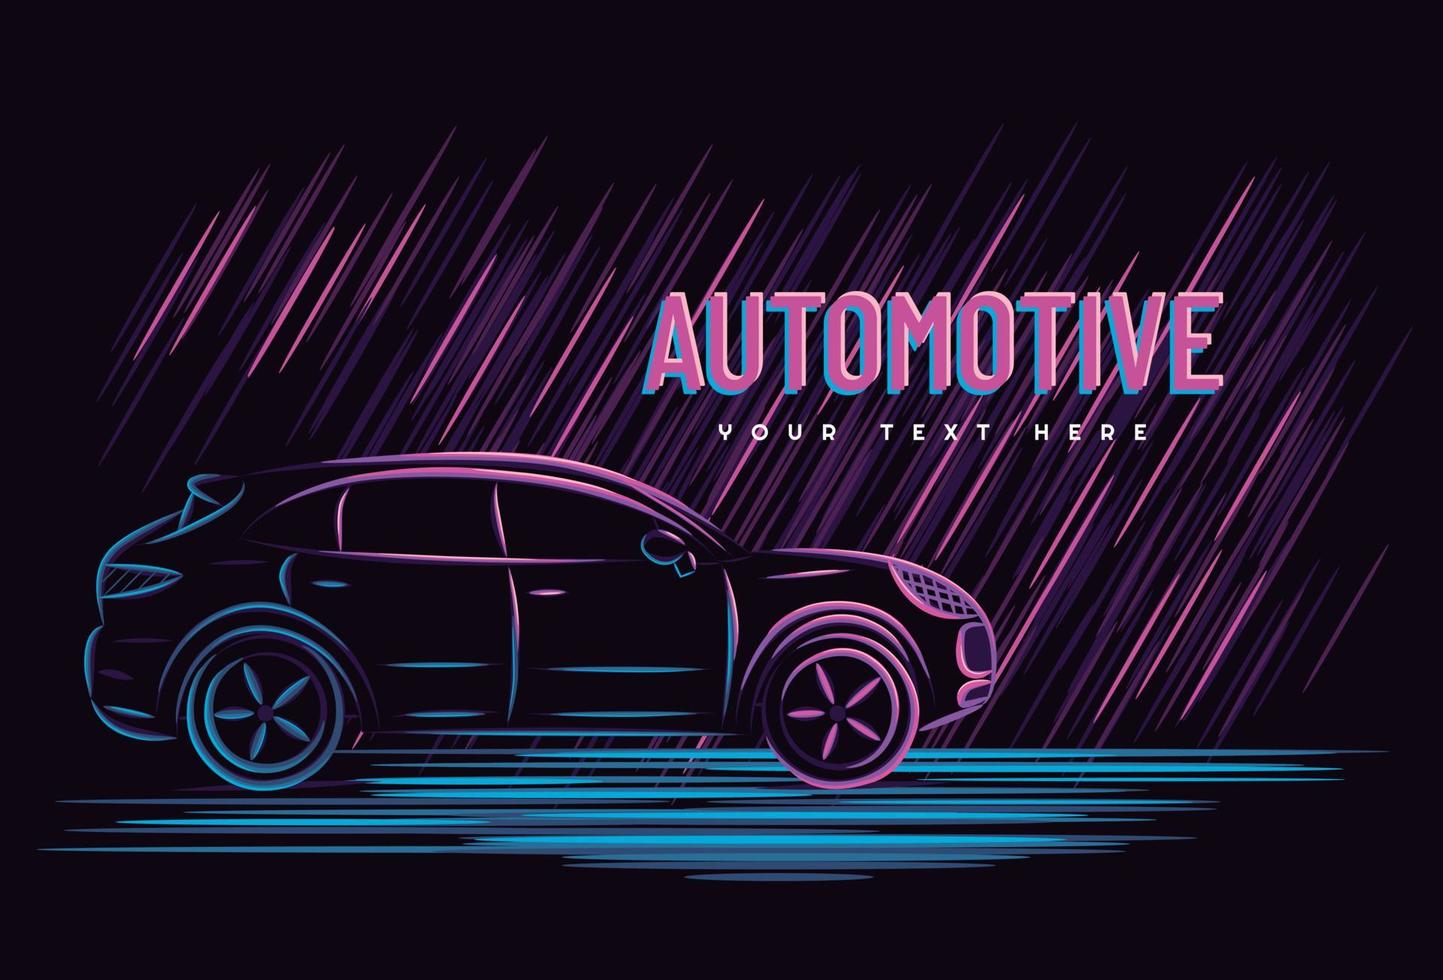 illustratie vectorafbeelding van auto automotive concept met lijn kunst neon teken stijl, goed voor t-shirt, spandoek, poster, bestemmingspagina, flyer. vector